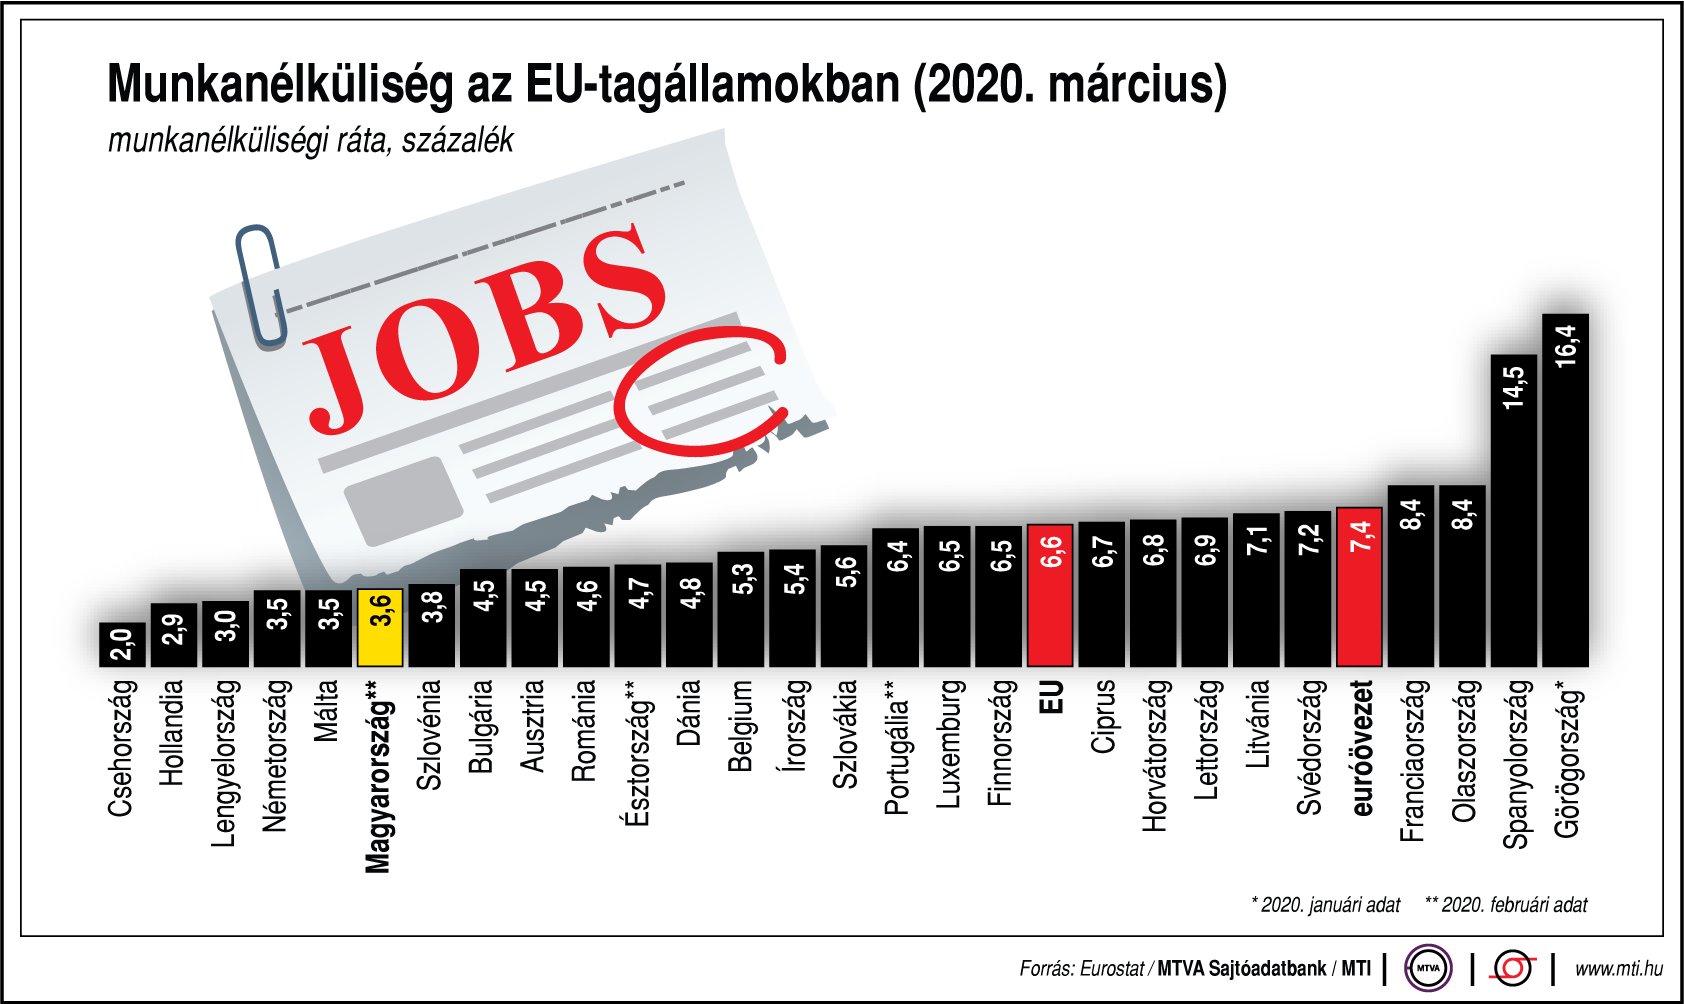 Így alakul a munkanélküliség az EU-tagállamokban - ábrán mutatjuk ábra